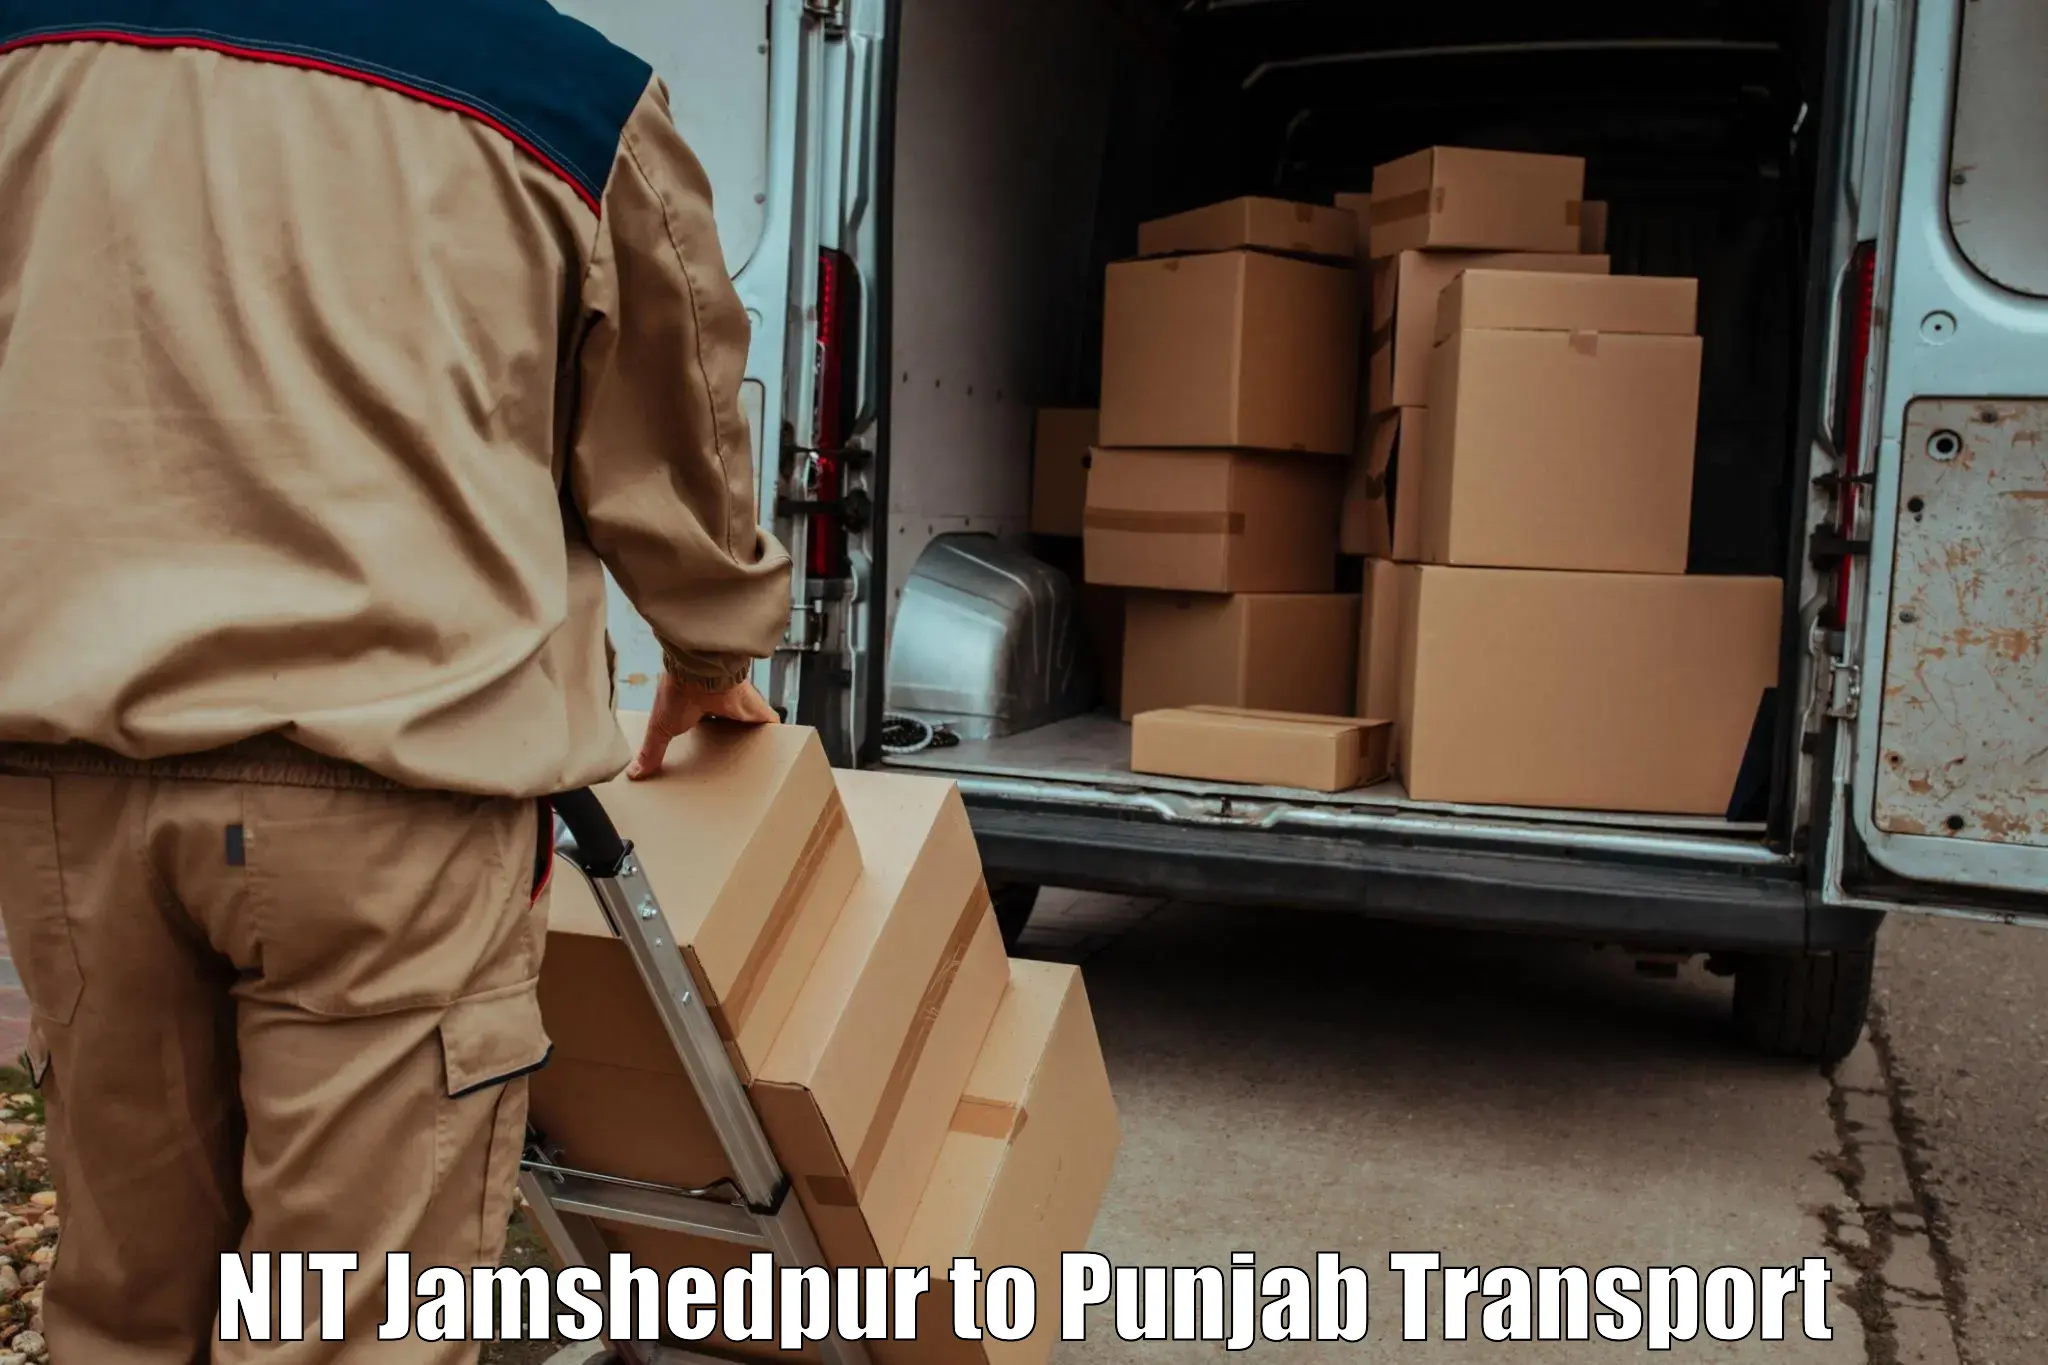 Vehicle parcel service NIT Jamshedpur to Begowal